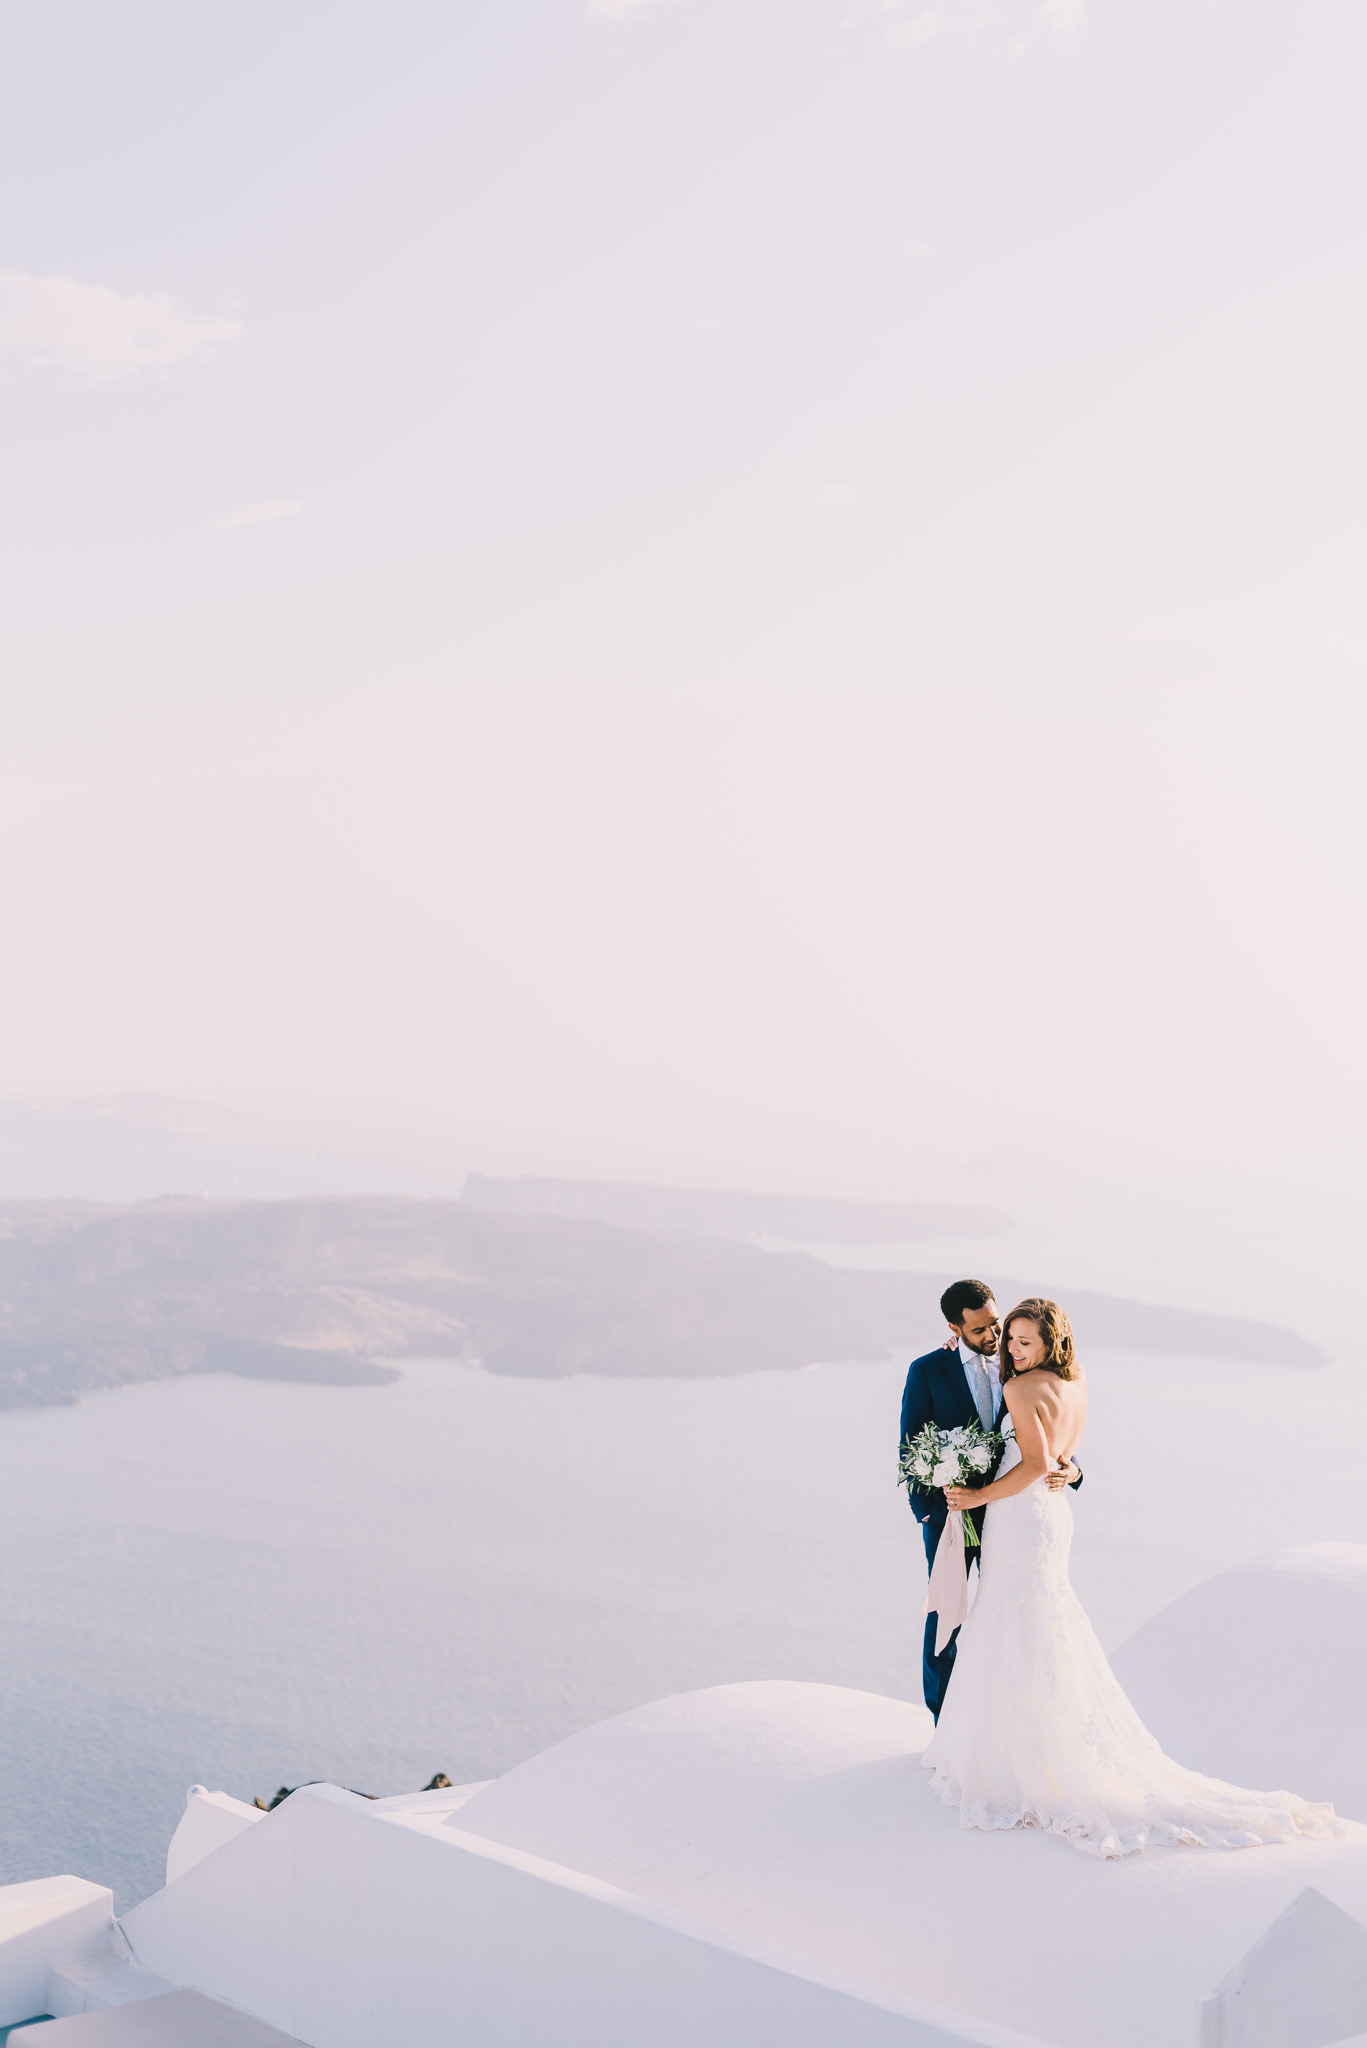 Simple & timeless destination wedding in Santorini, Greece | Santorini ...